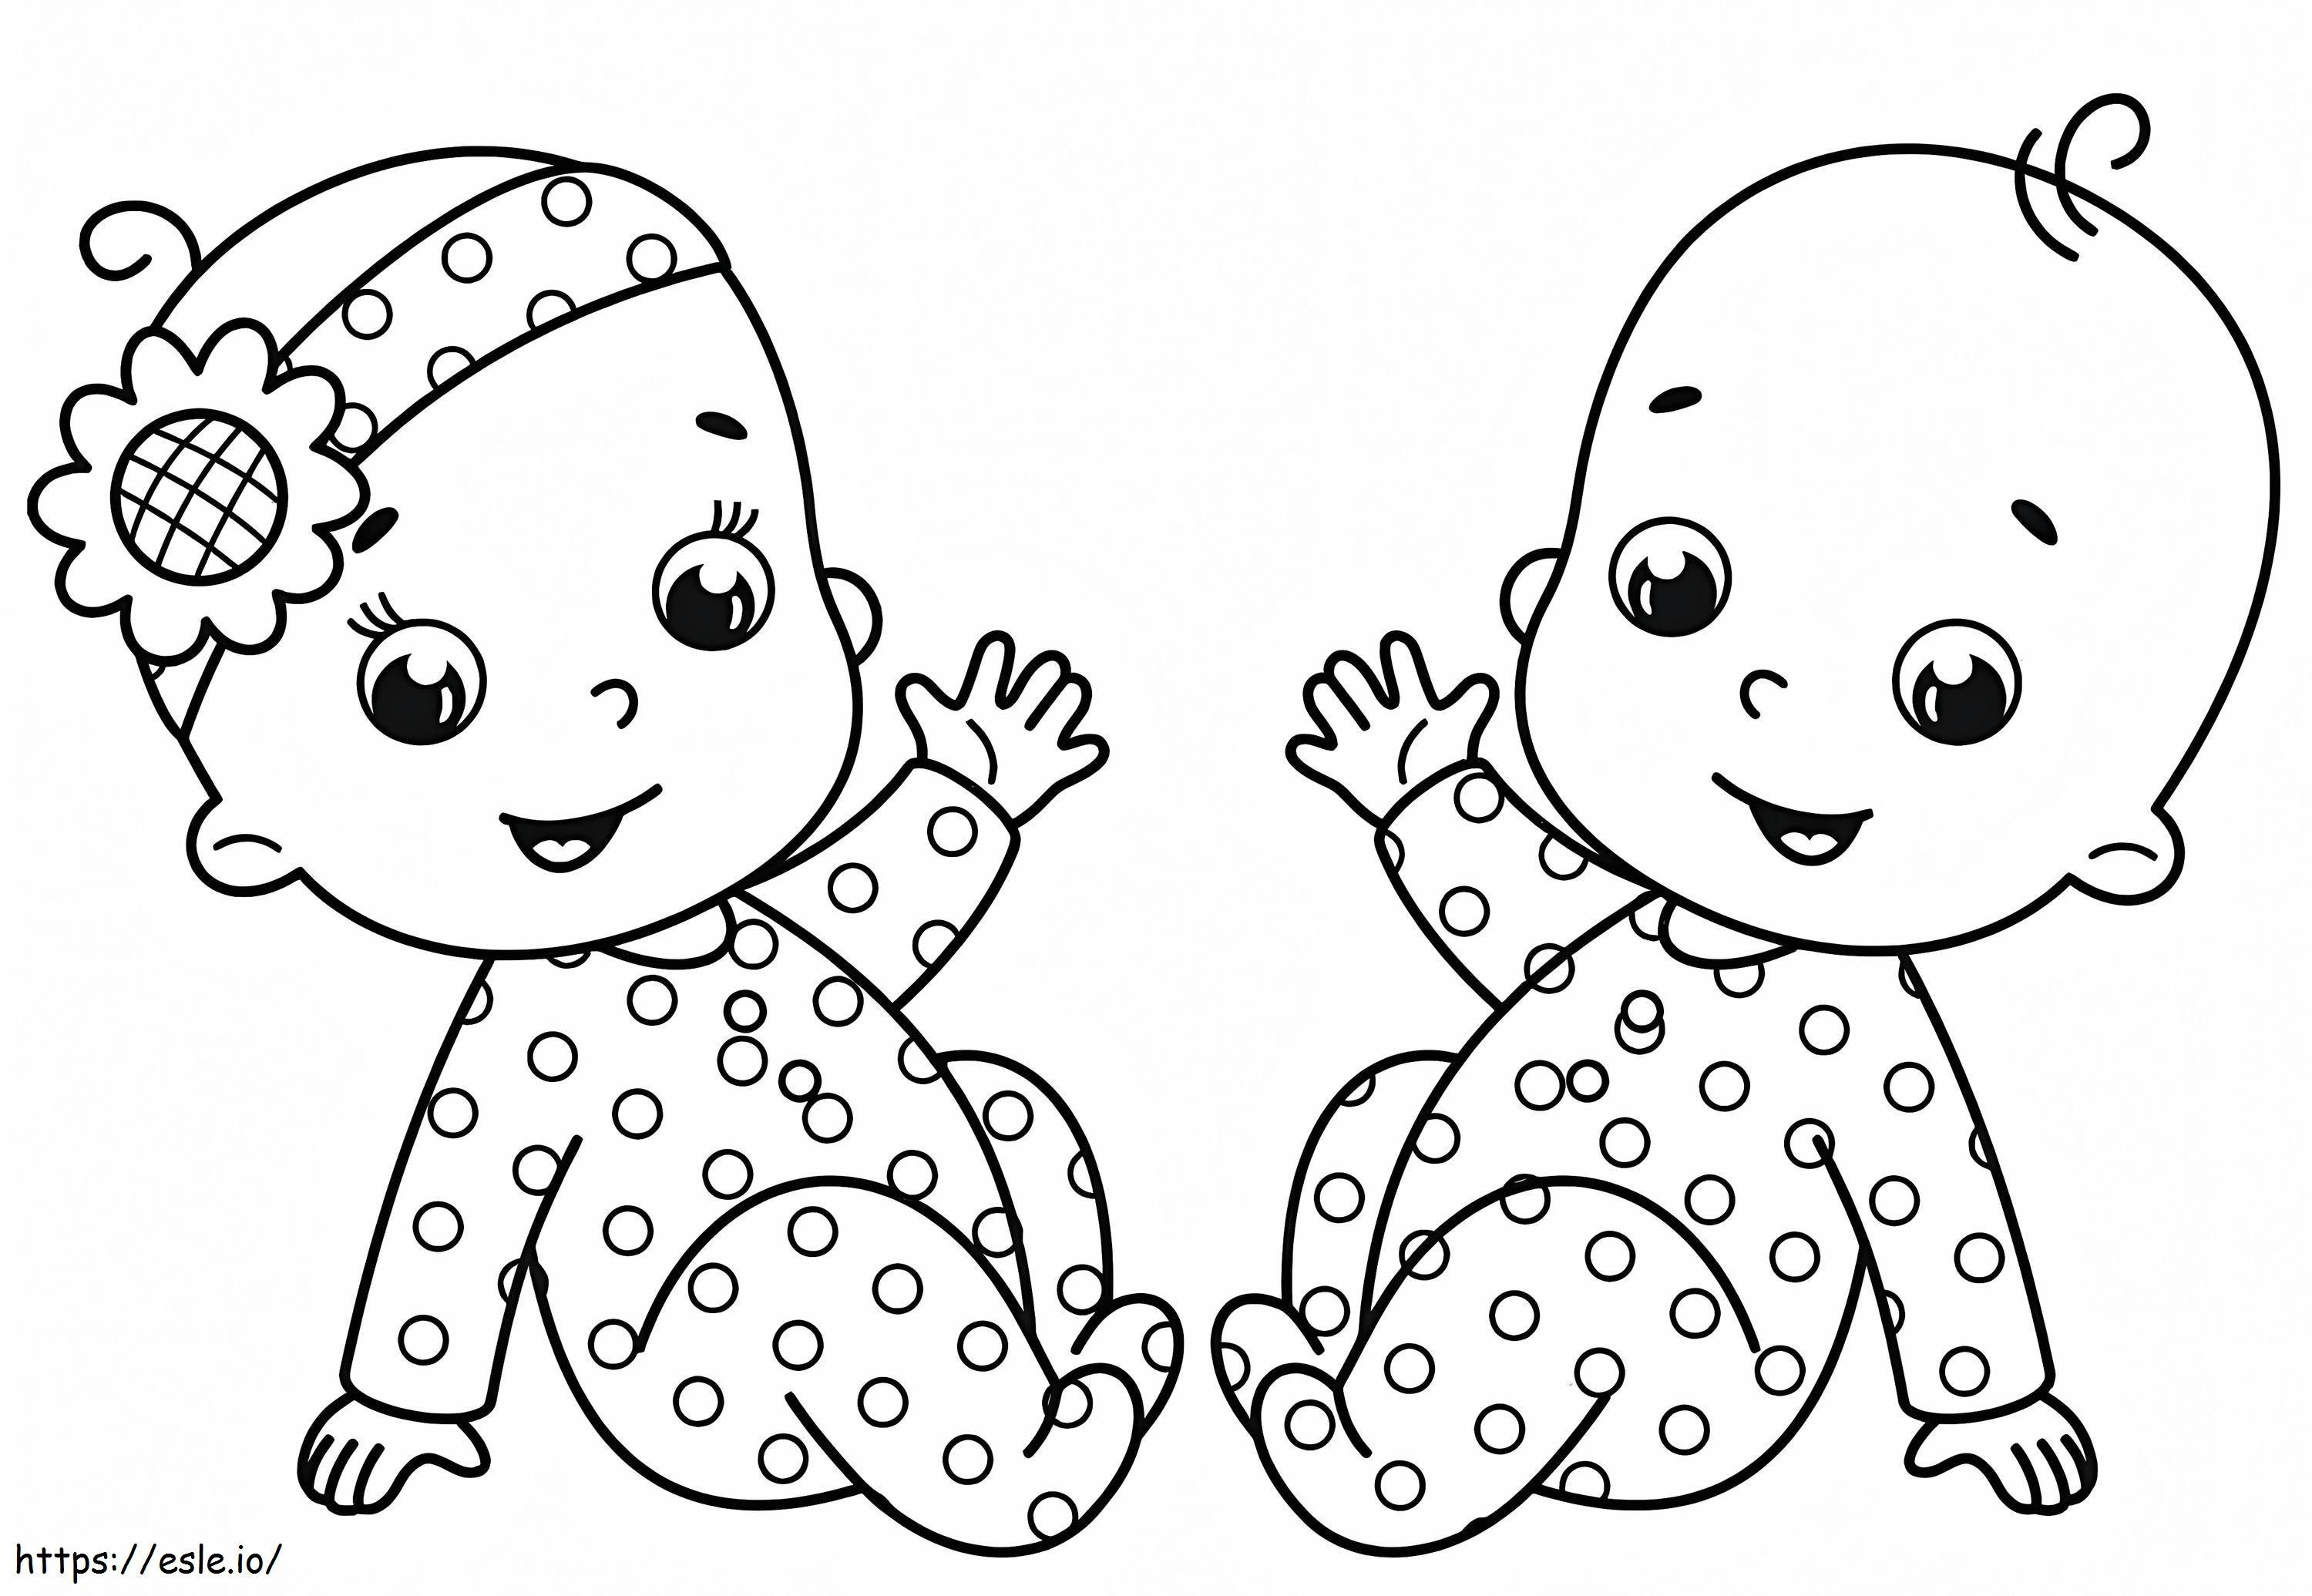 İki bebek boyama